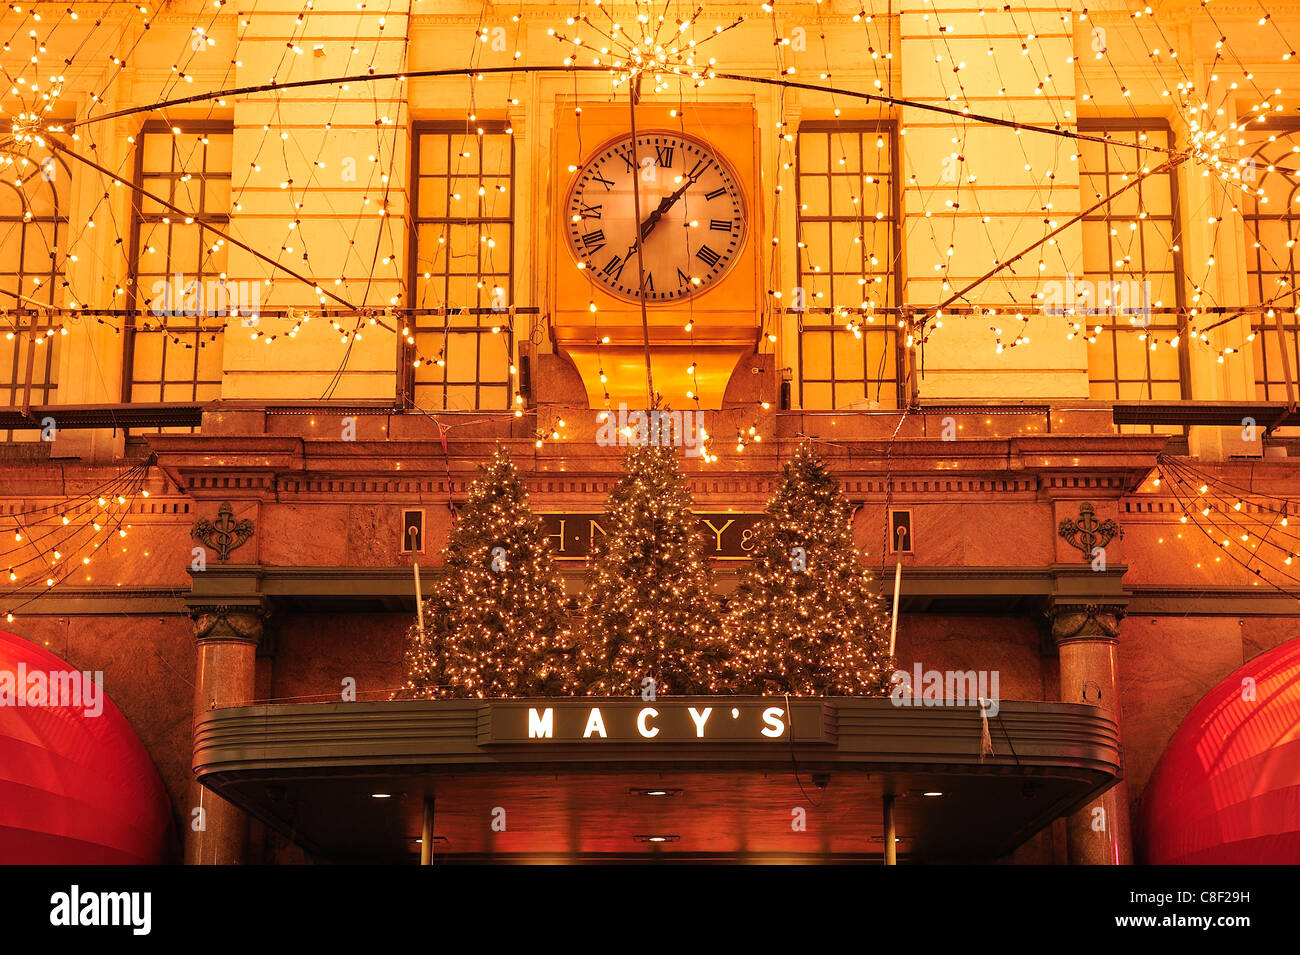 Macys, grand magasin, Manhattan, New York, USA, United States, Amérique, Noël, entrée privée Banque D'Images